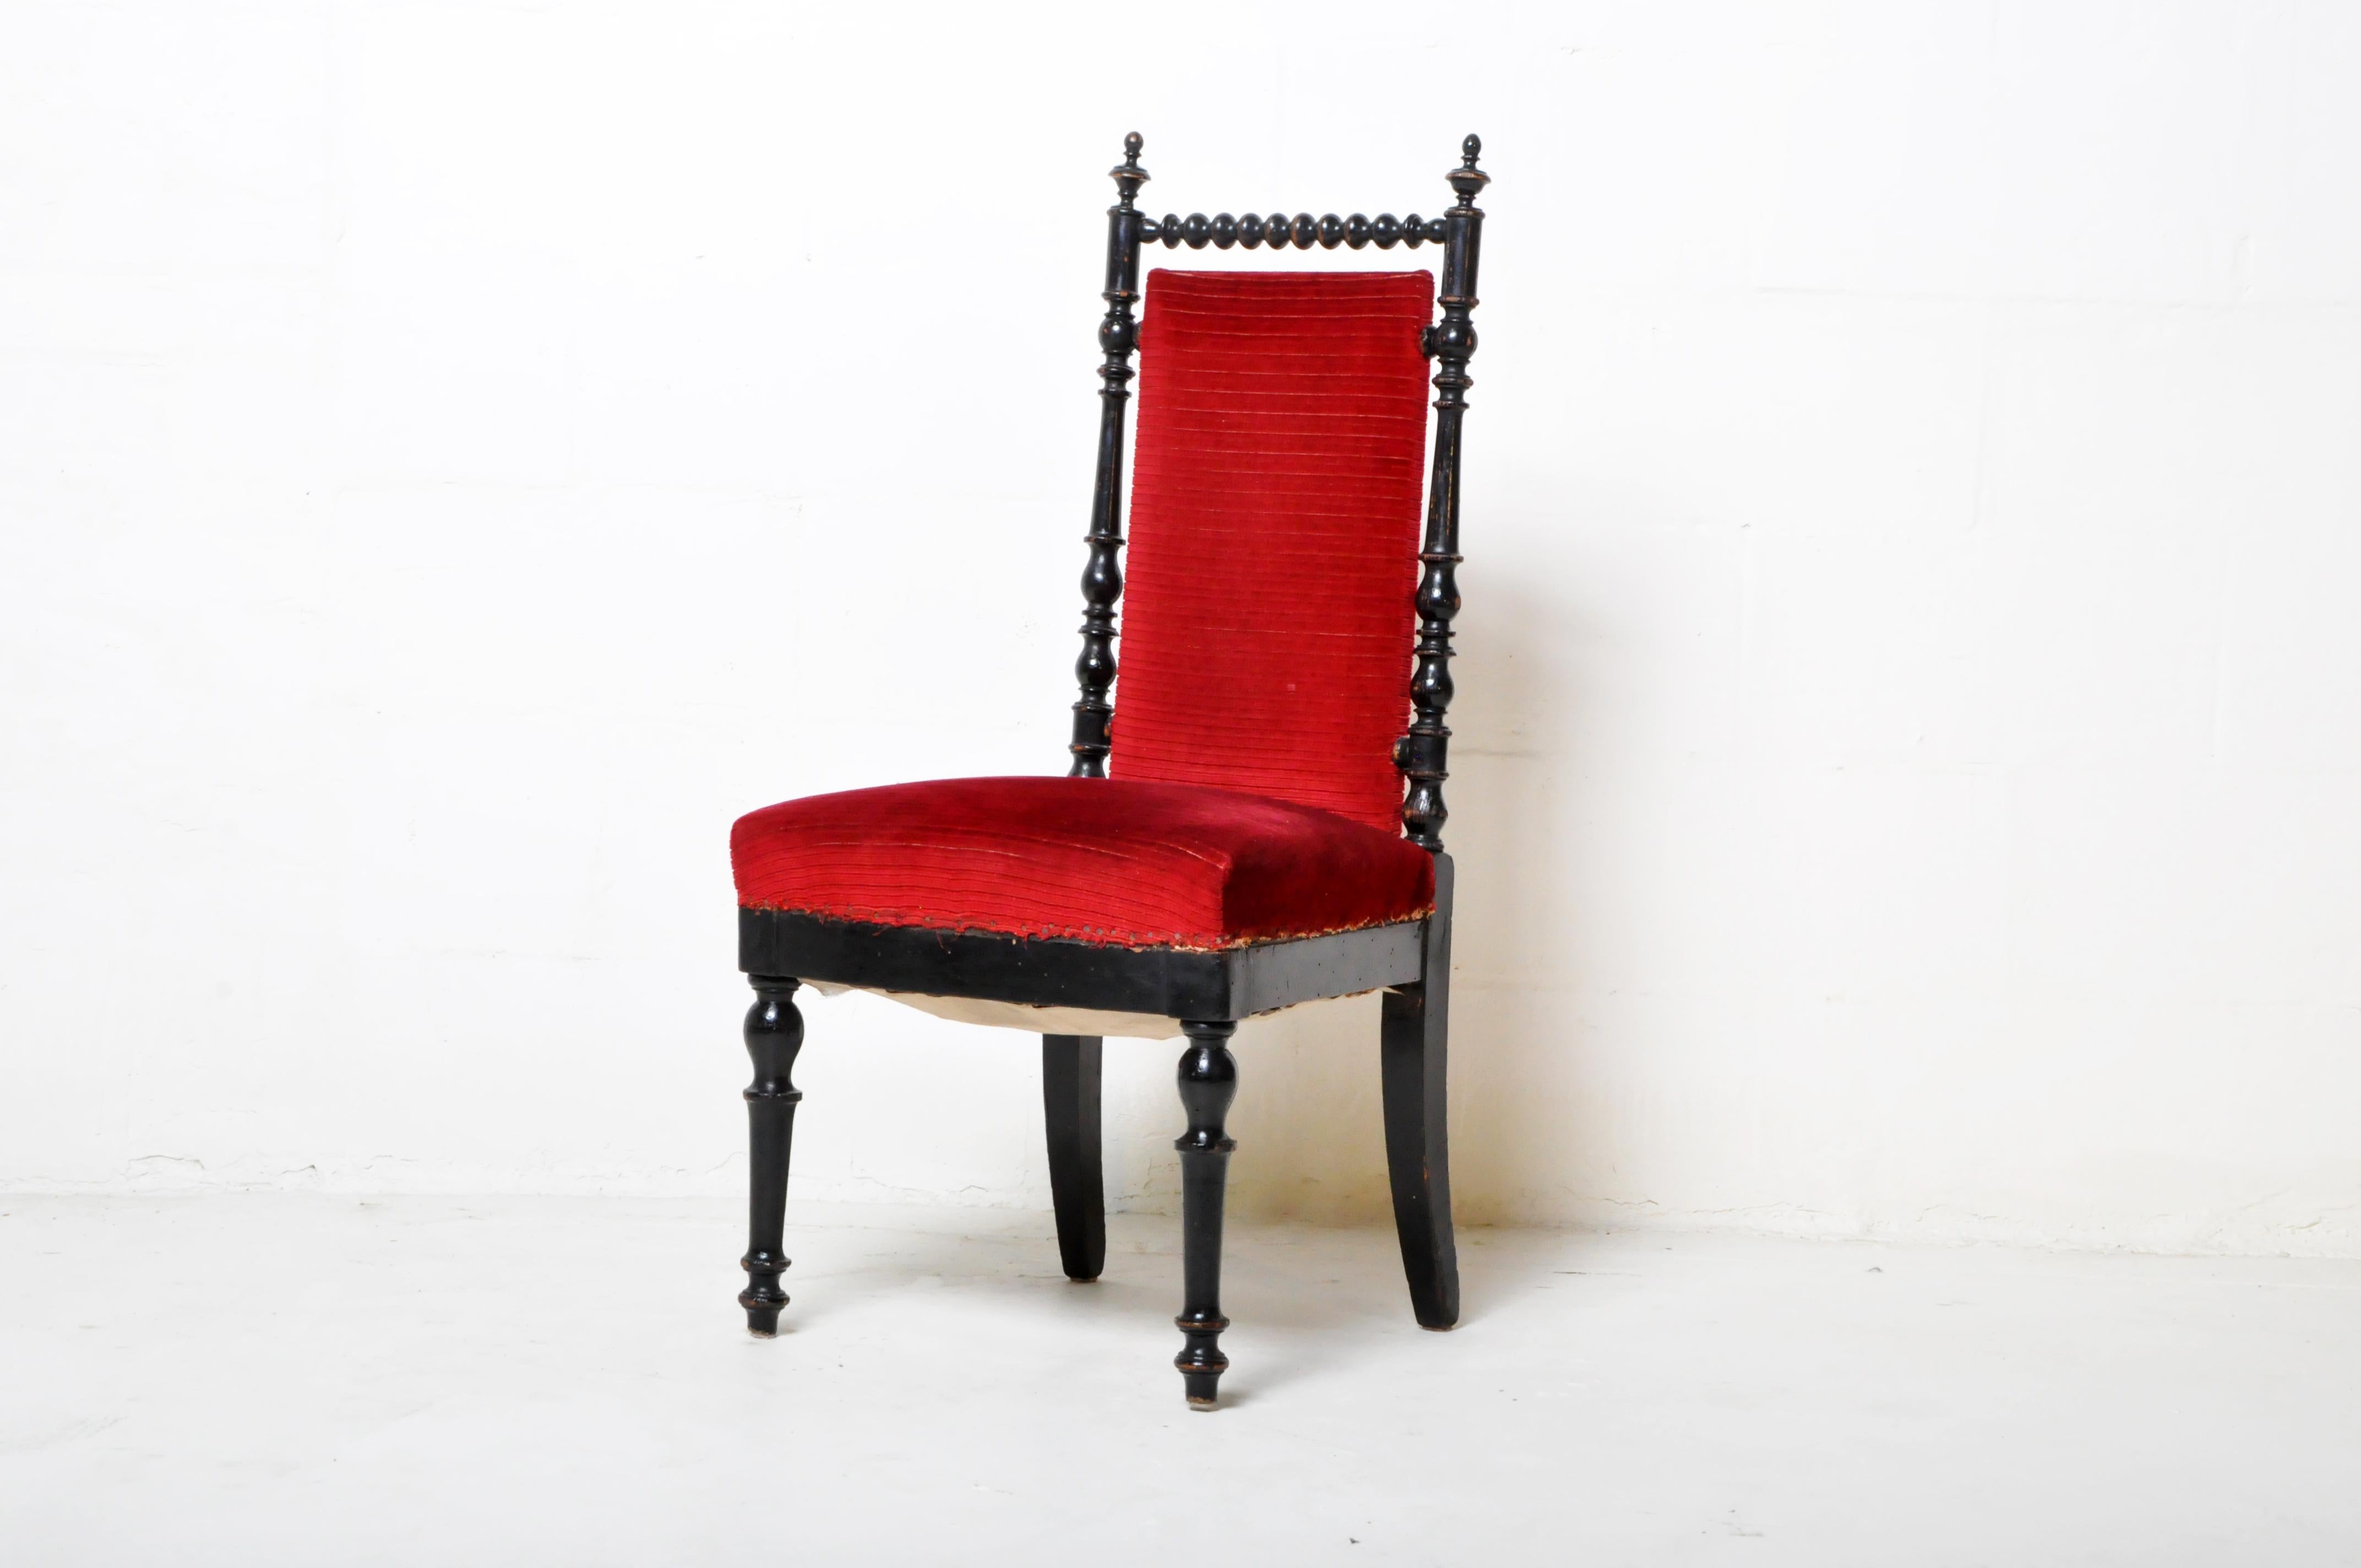 Dieser alte Beistellstuhl stammt aus Paris, Frankreich, und wurde aus Walnussholz hergestellt, ca. 20. Jahrhundert. Der Stuhl ist rot gepolstert und besteht aus massivem Walnussholz. Der Stuhl ist robust, stabil und für den täglichen Gebrauch